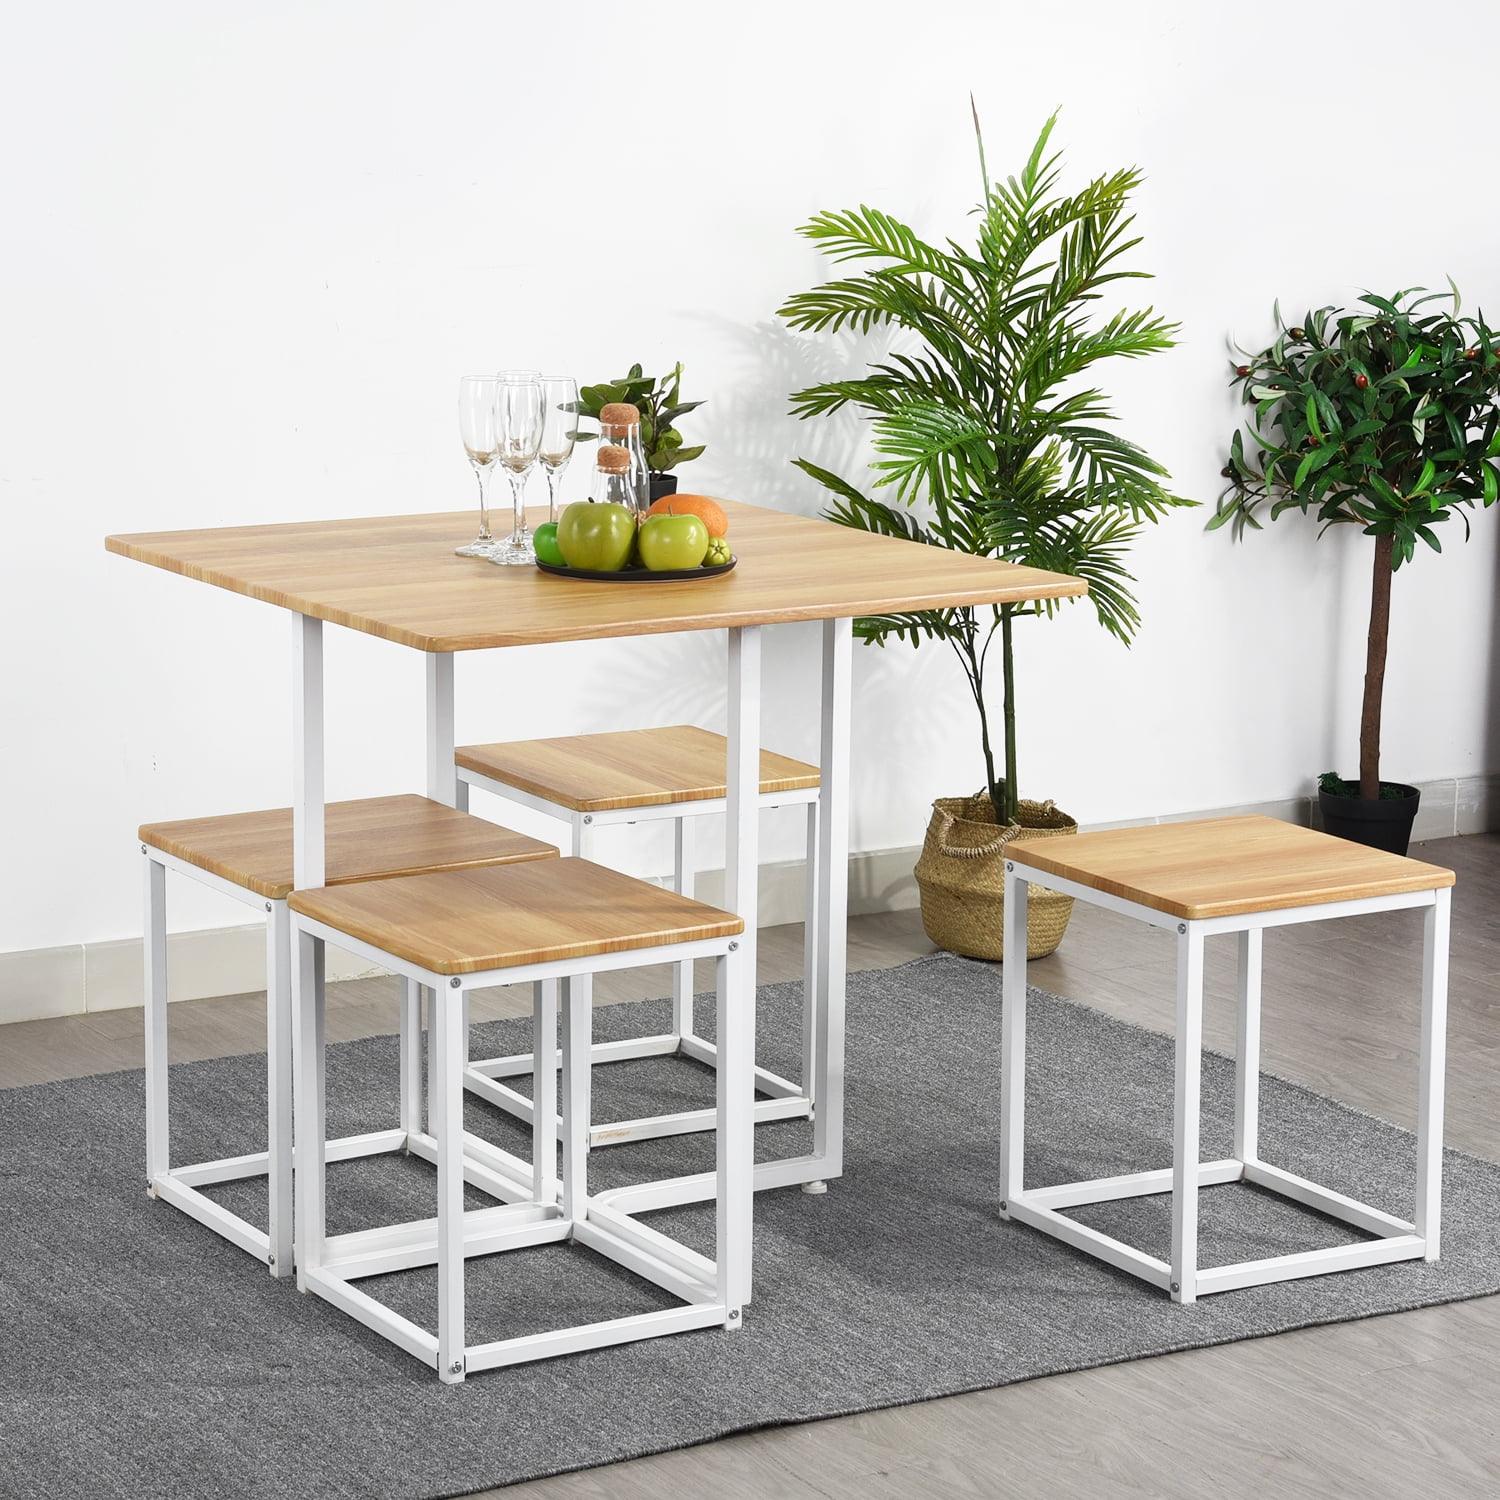 FurnitureR Dining Table Set